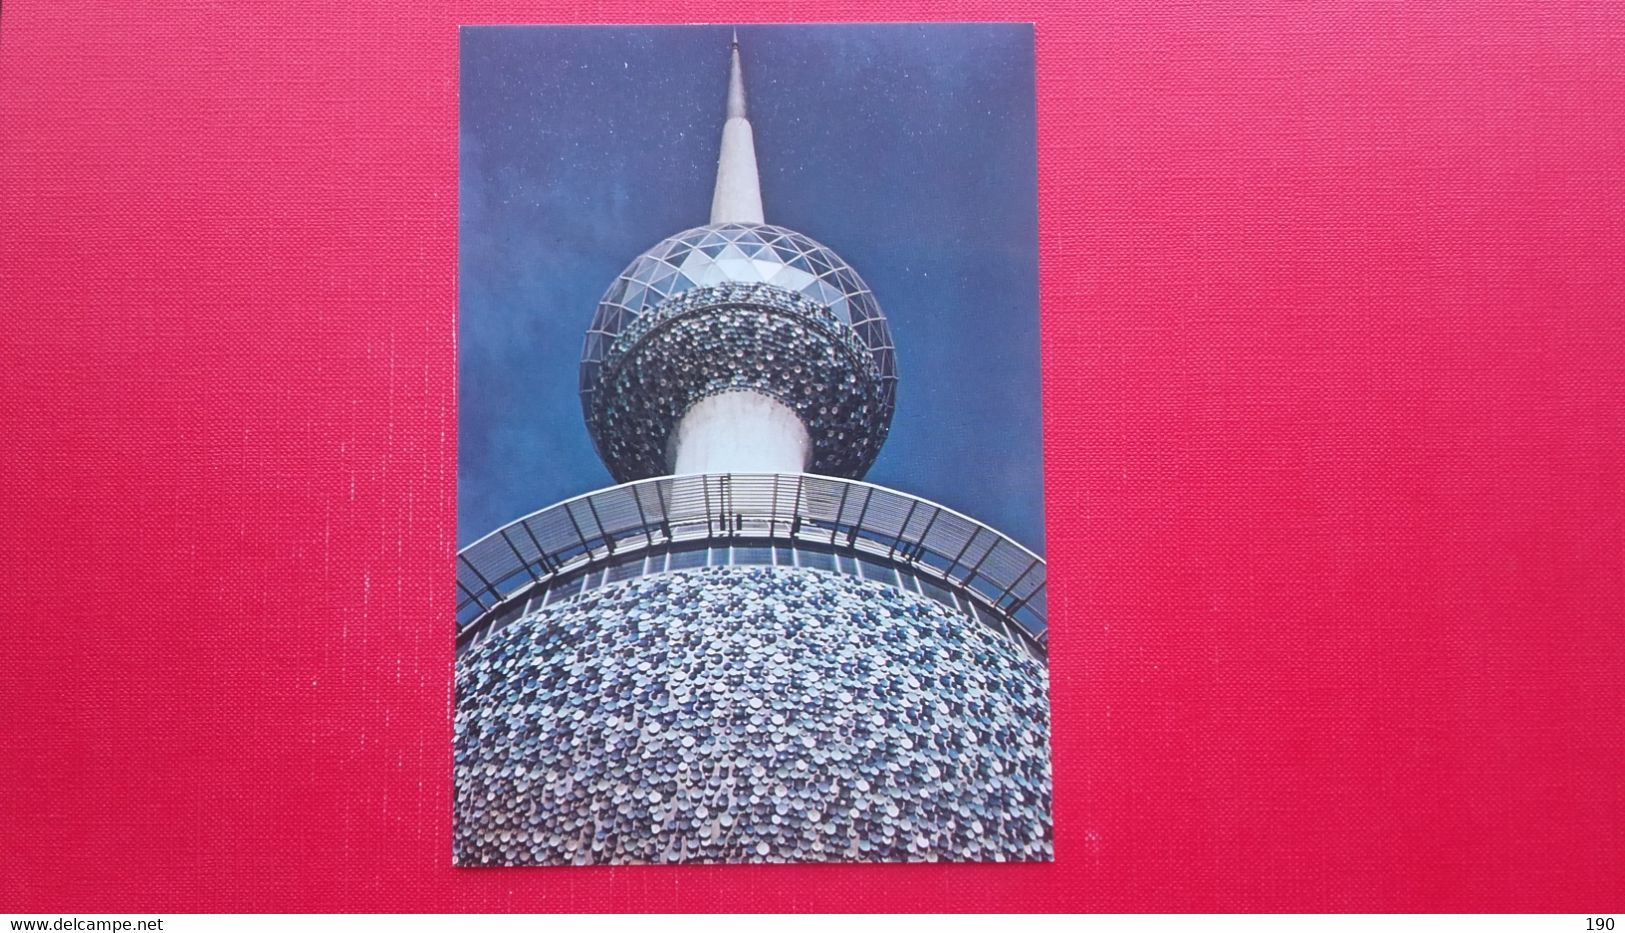 2 Postcards.Photographie:Alain Saint Hilaire - Kuwait